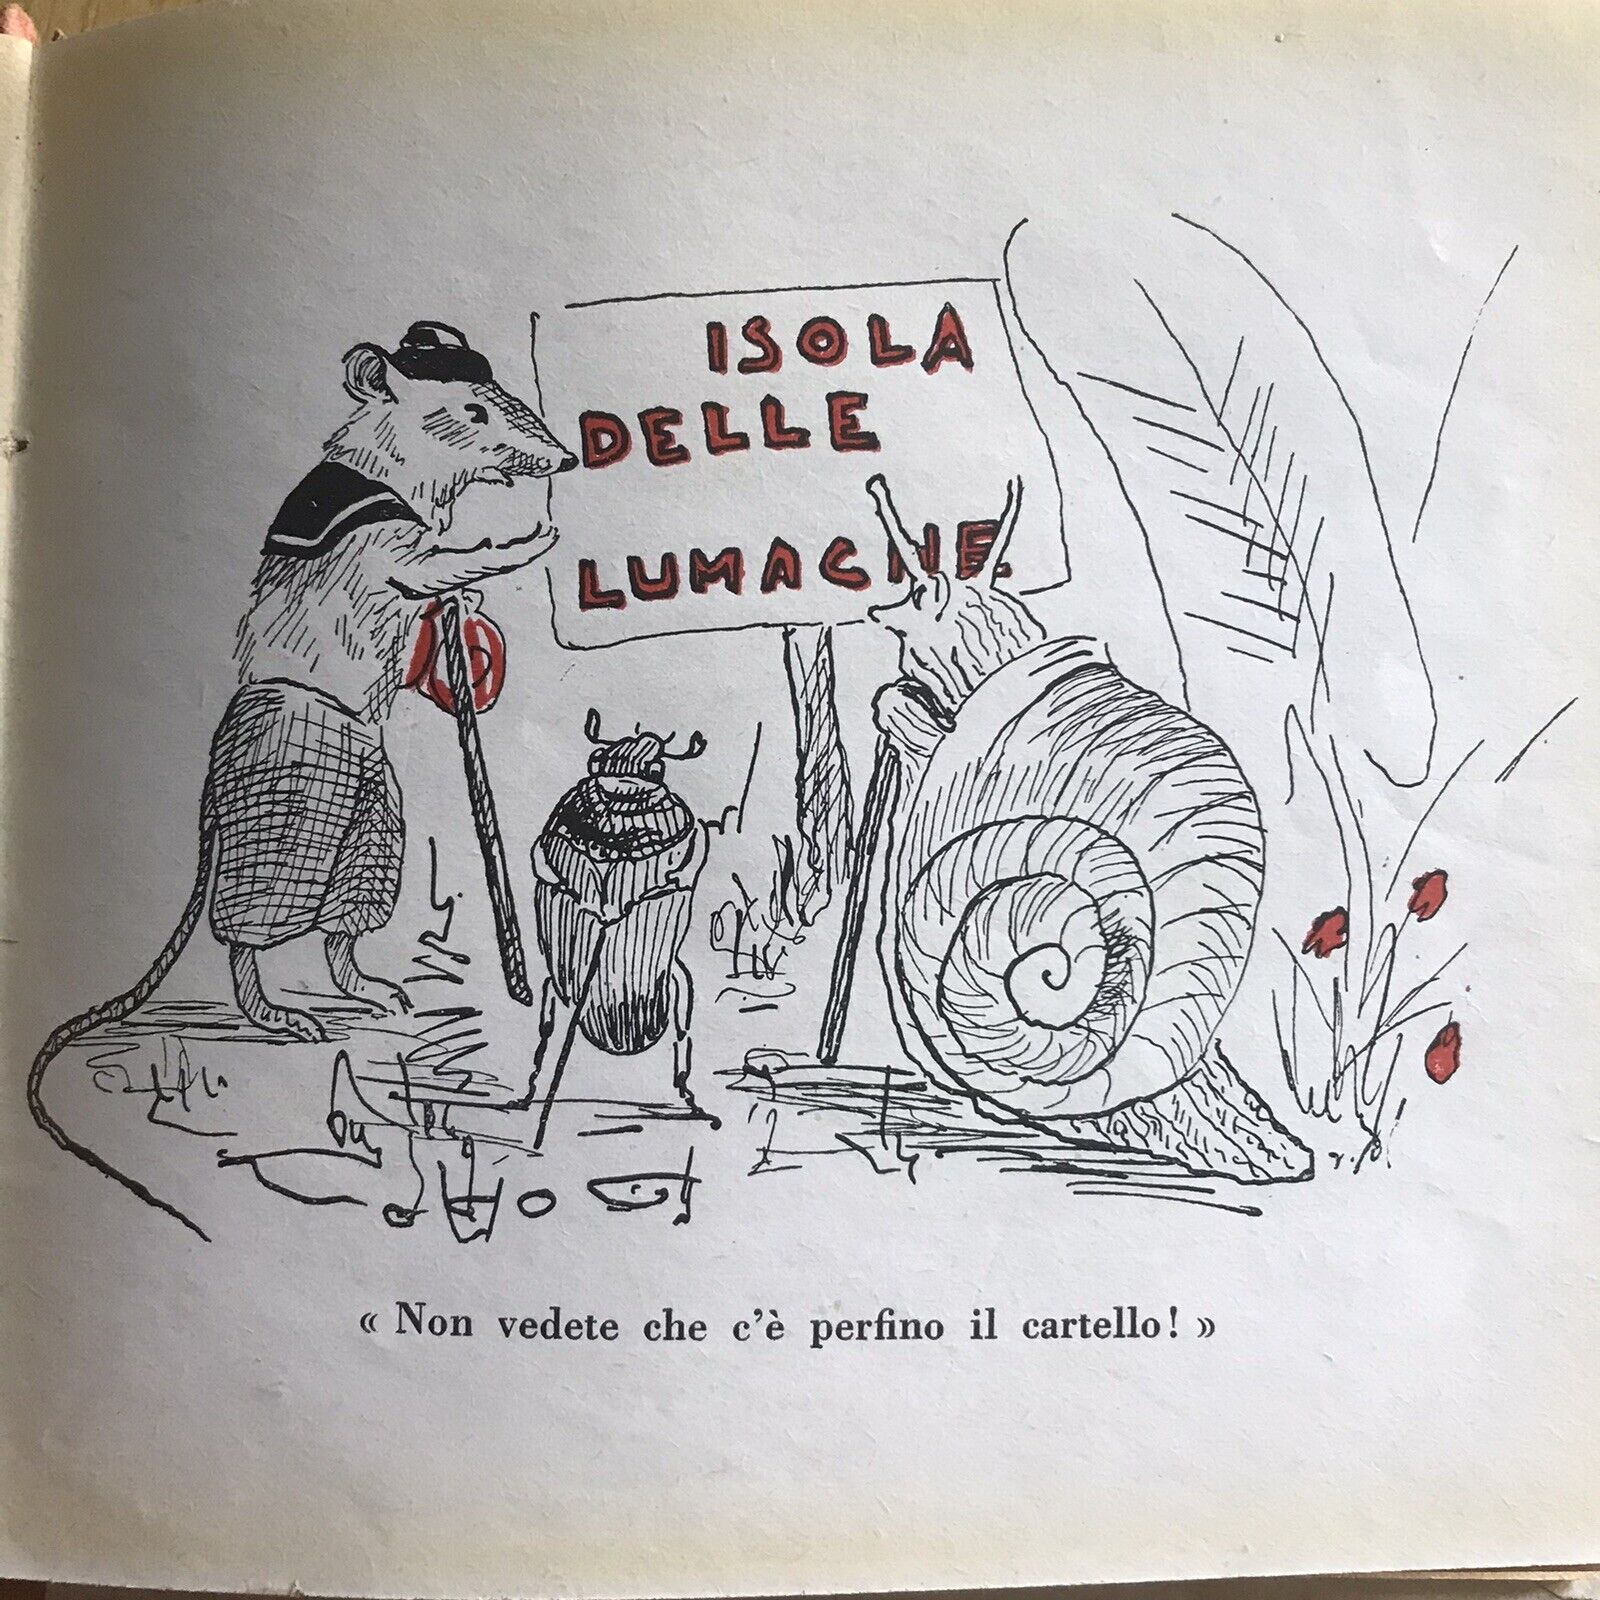 1948 Il Topino Marinaro (The Sea Mouse) Ernest Aris (Gresio Firenze pub) rare Honeyburn Books (UK)